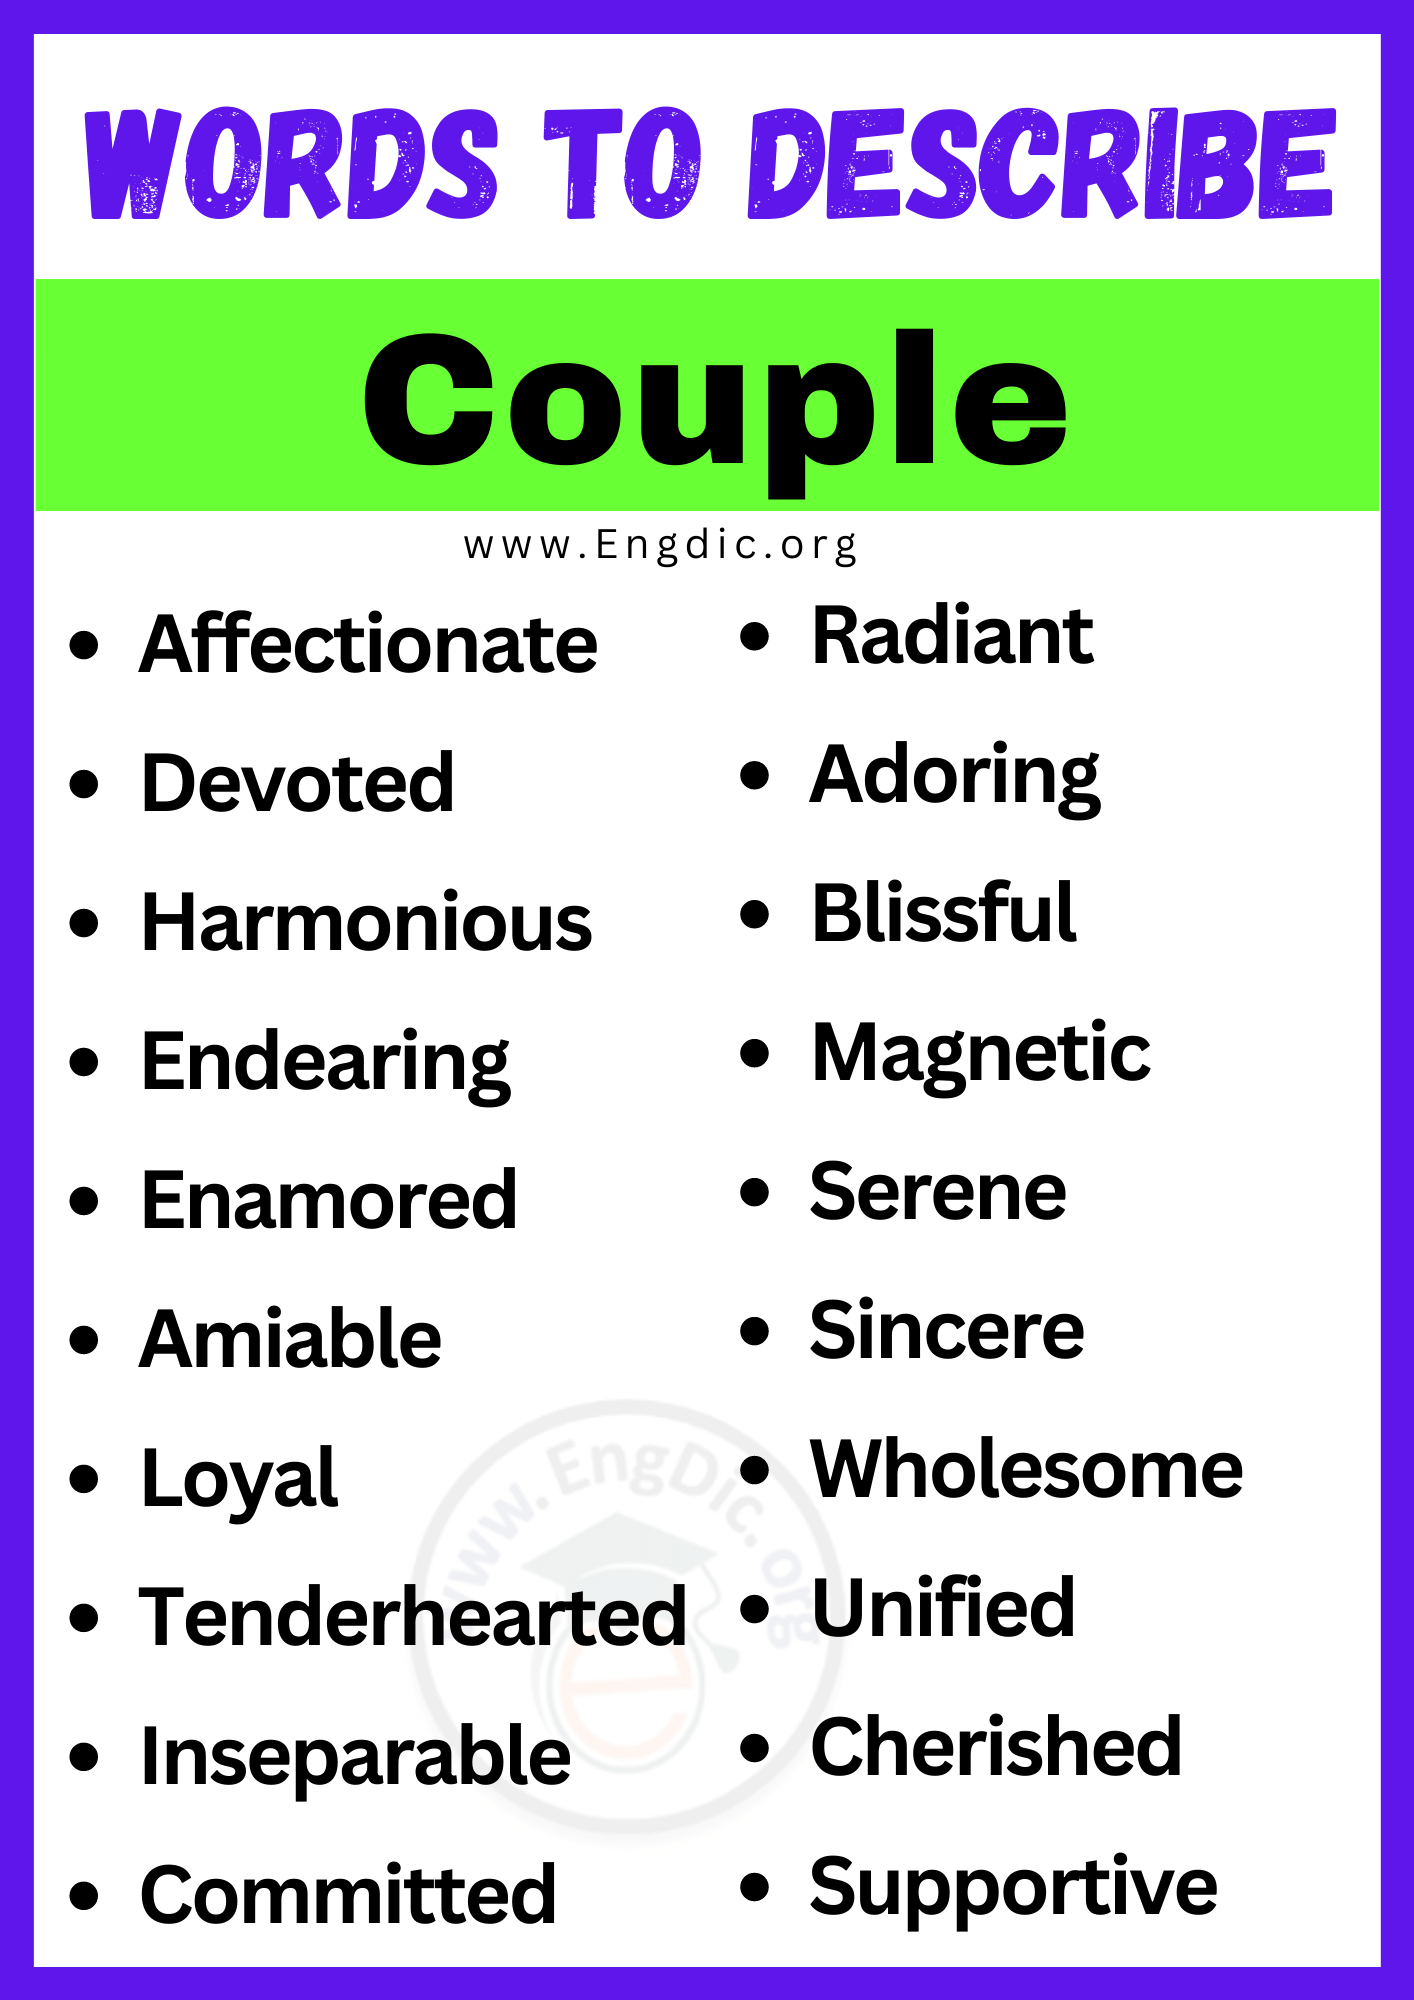 Words to Describe Couple